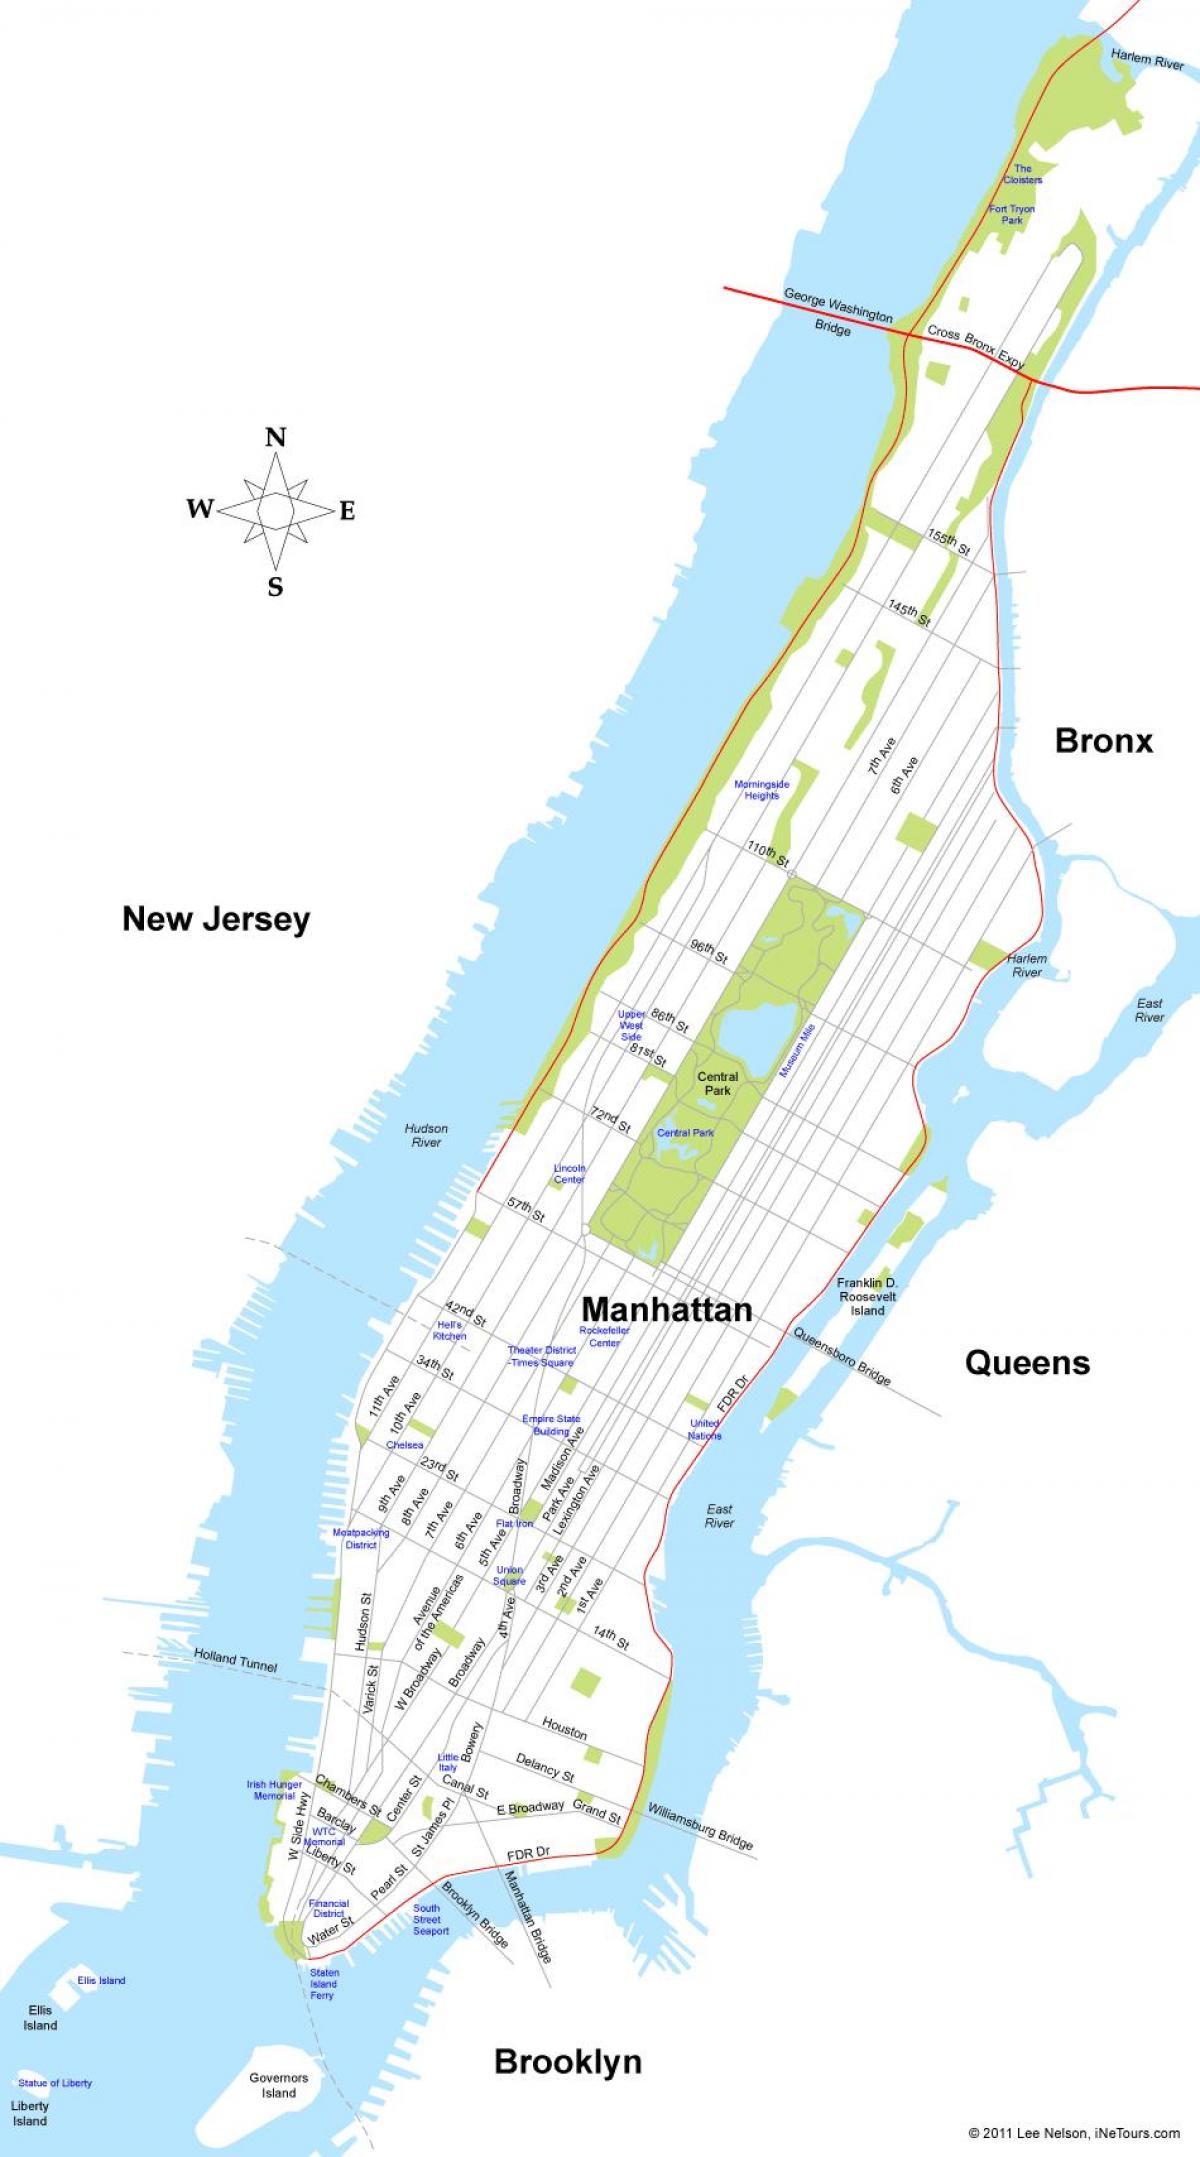 Karte von der Insel Manhattan in New York